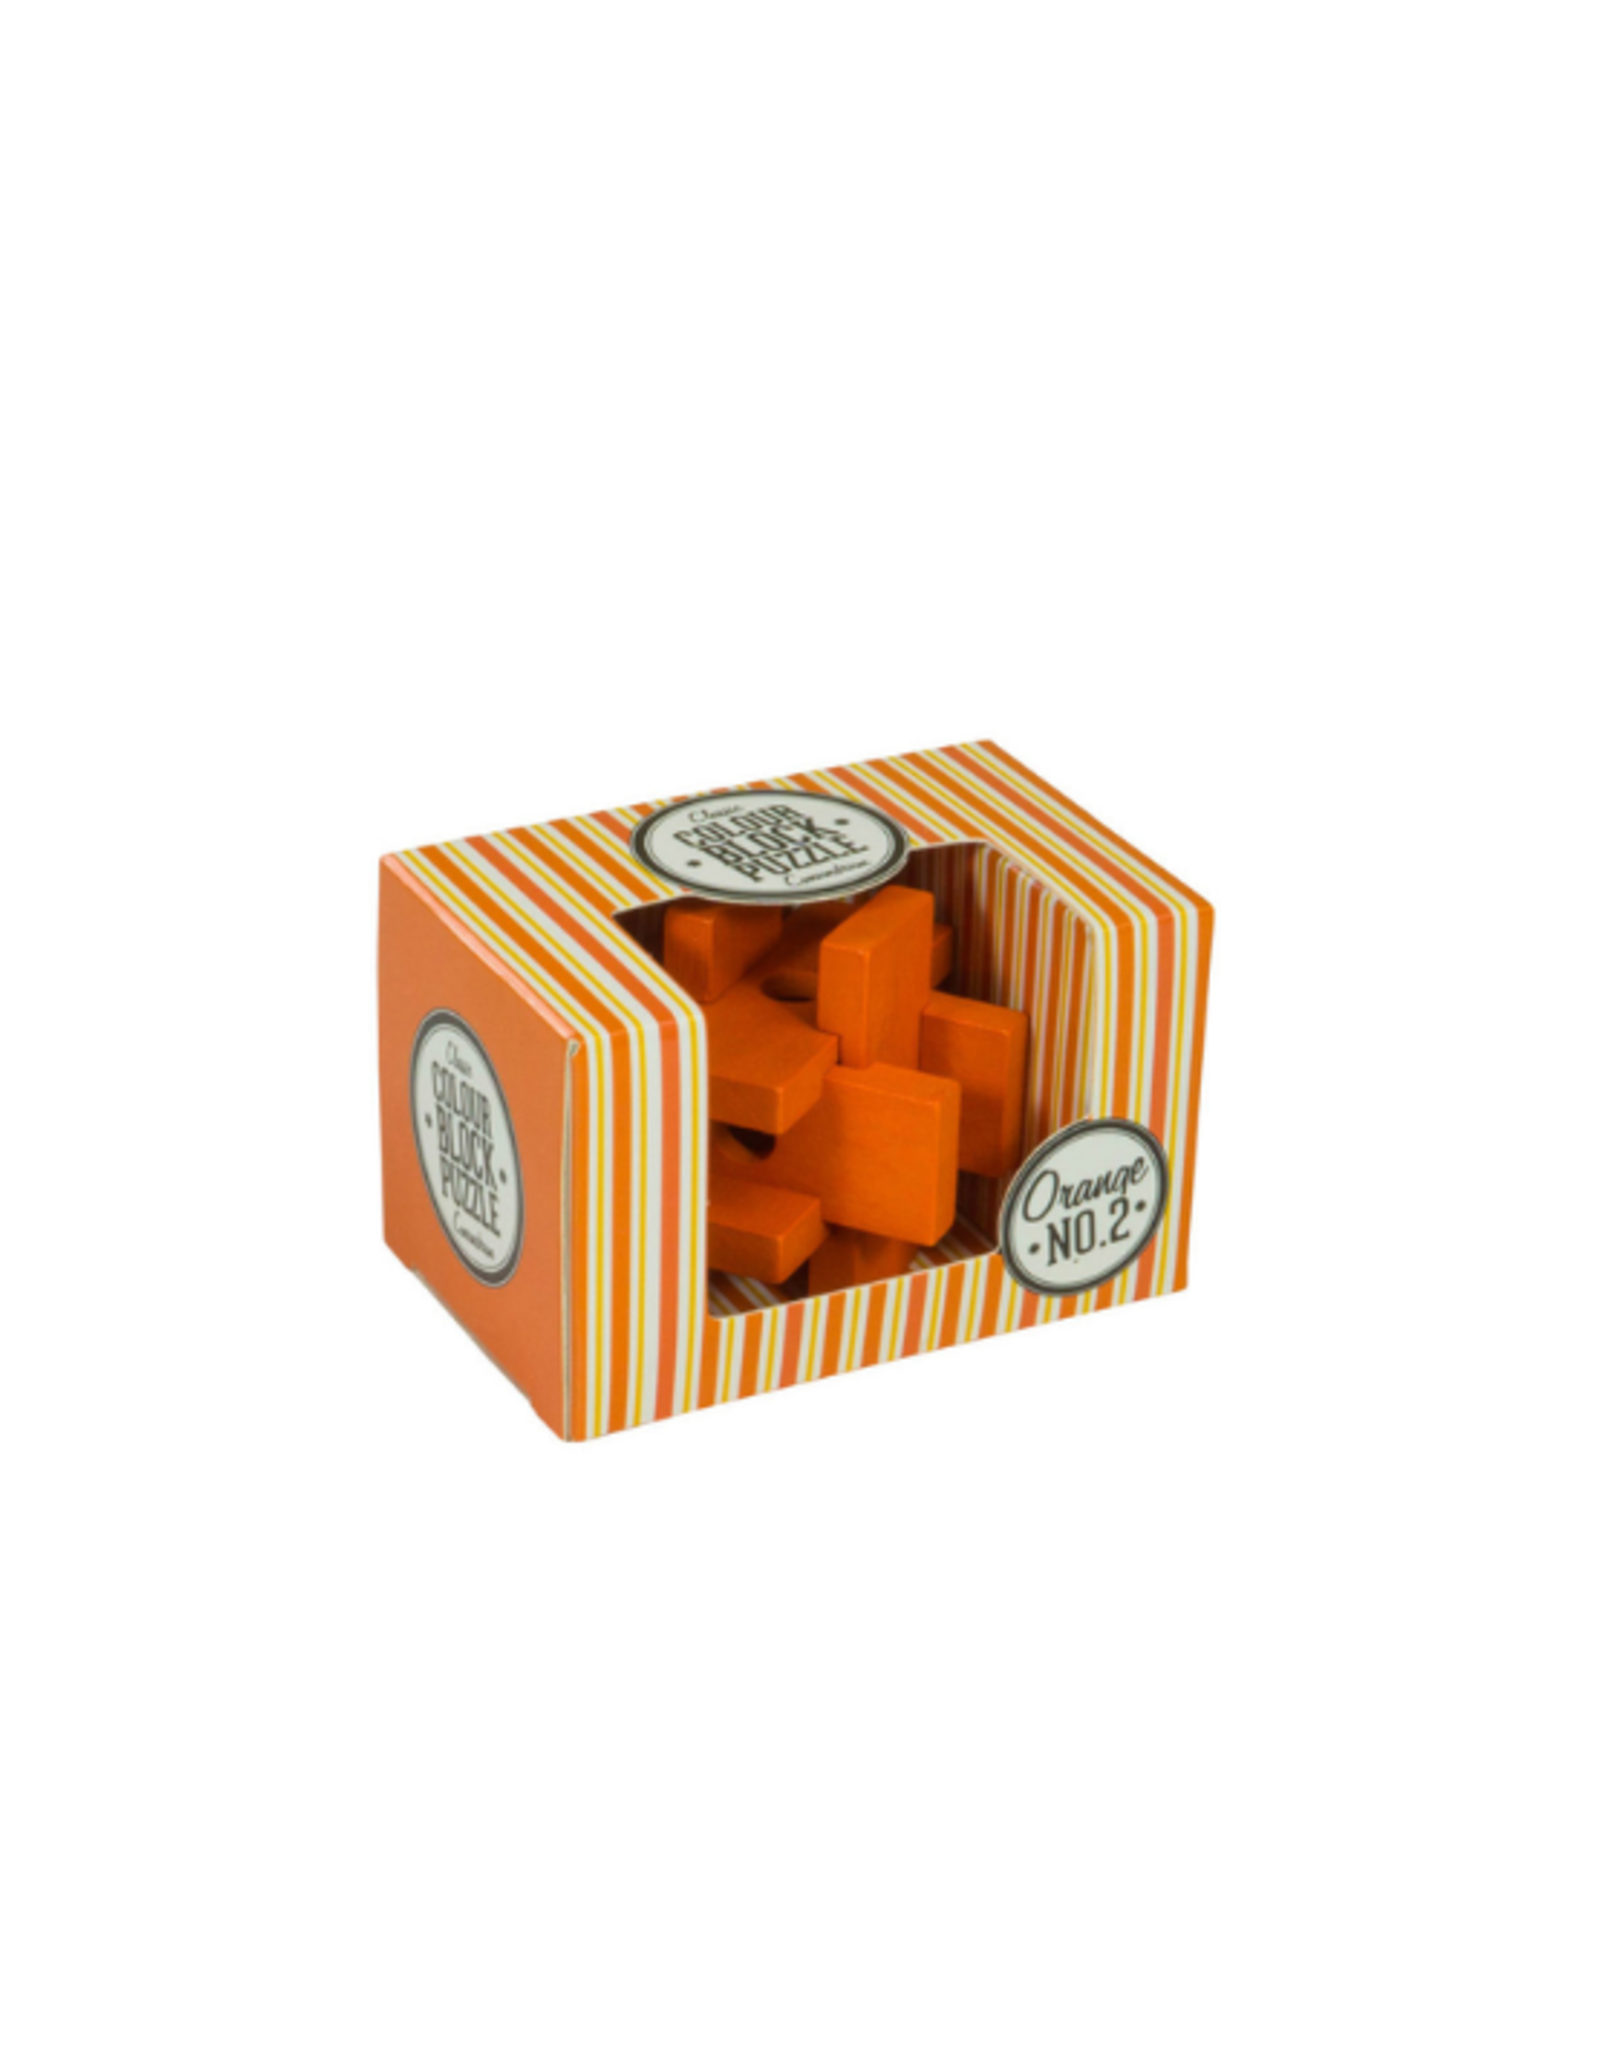 Professor Puzzle Professor Puzzle - Wood Colour Block Puzzles - Orange No. 2